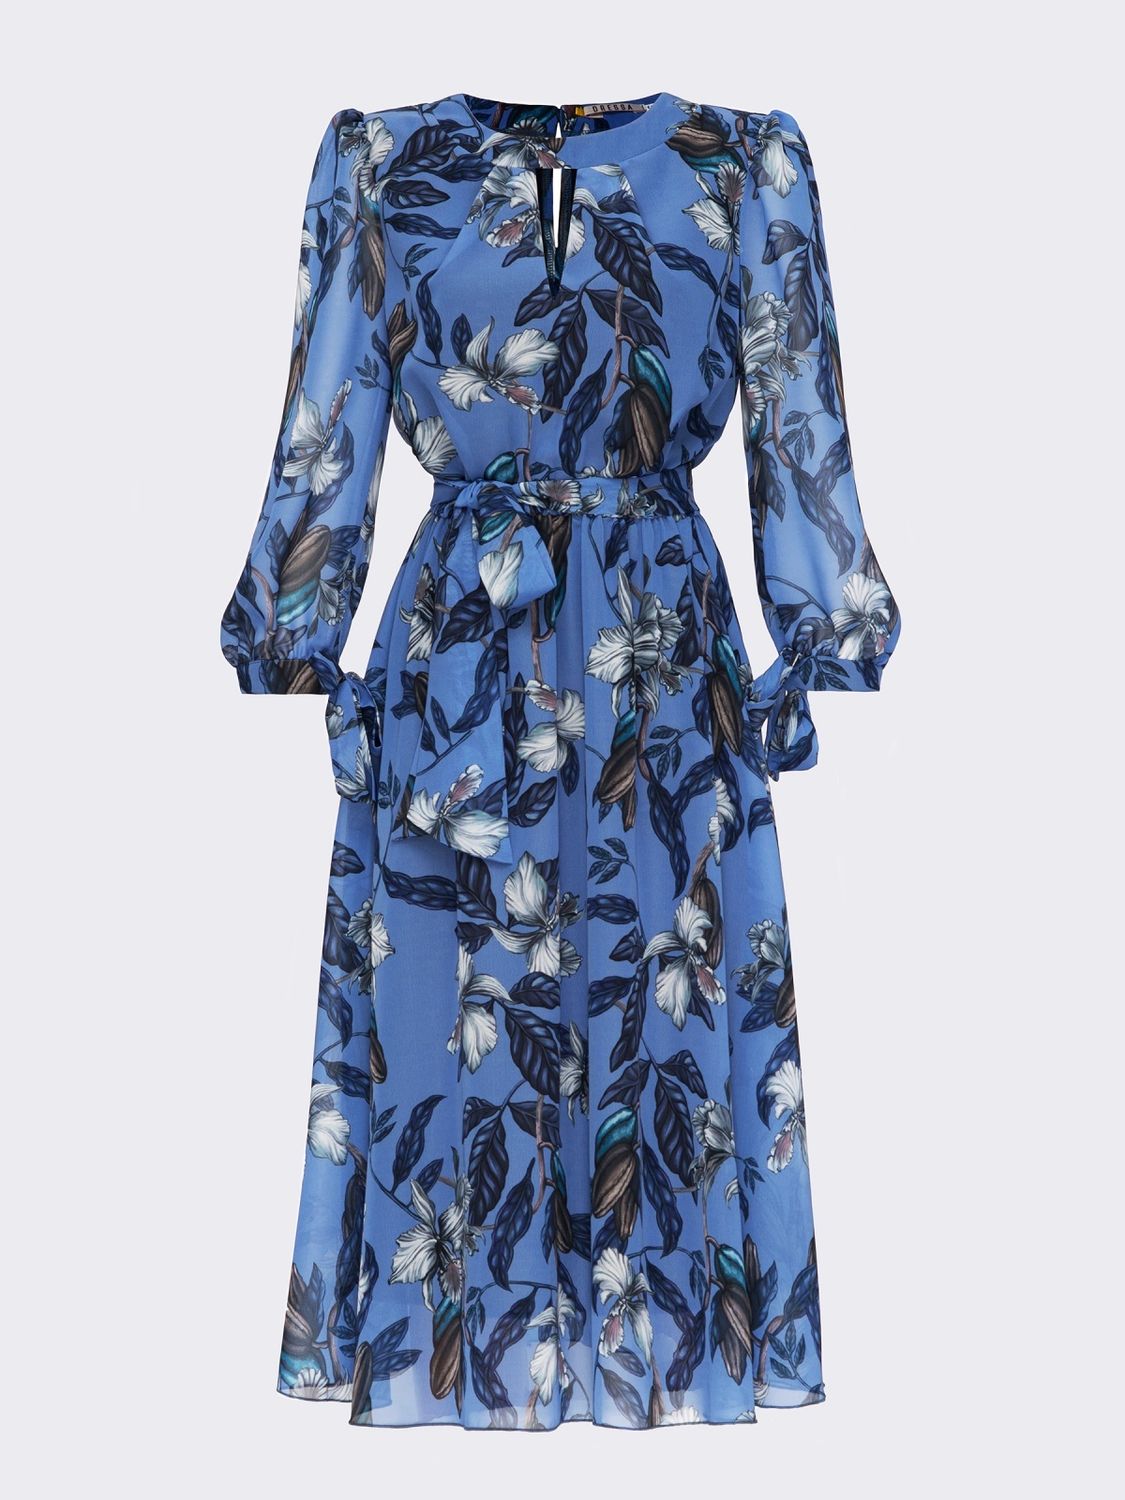 Шифоновое платье миди с юбкой-солнце голубое - фото